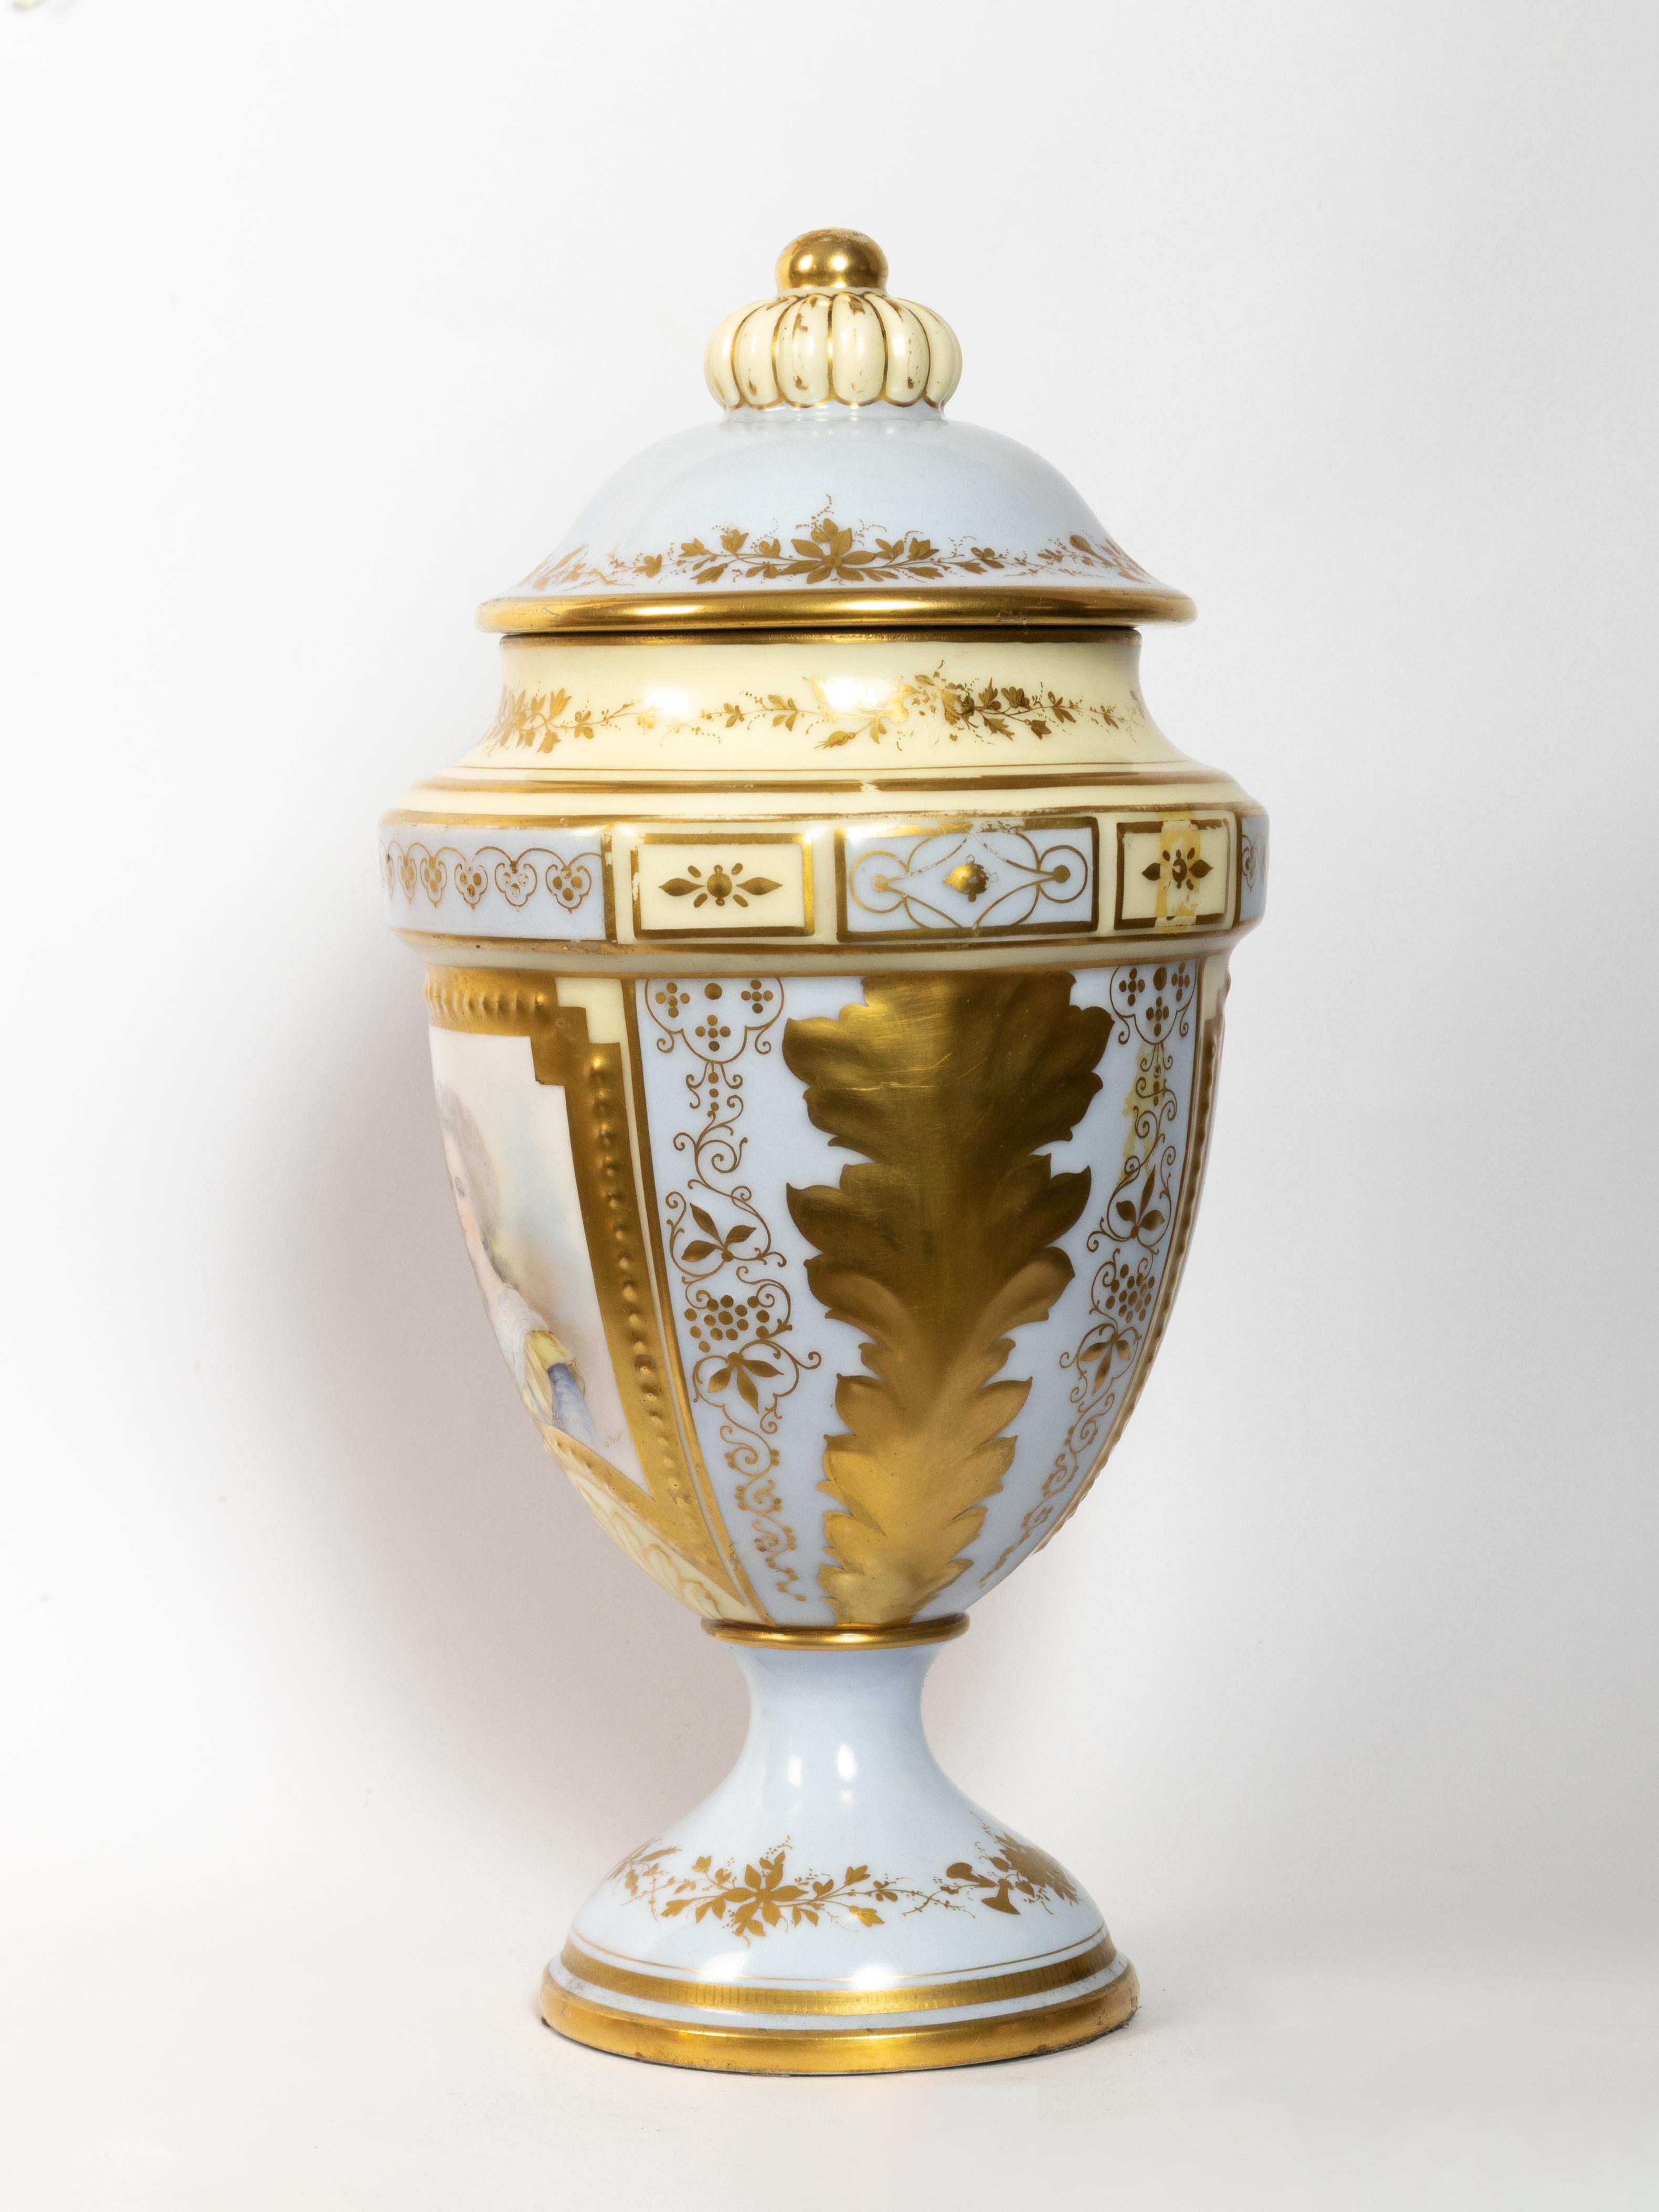 Diese exquisite Vase aus Sèvres aus dem 19. Jahrhundert hat einen zarten hellblauen Porzellankörper, der mit schön geätzten Friesen und Blättern verziert ist. 
Die goldene Bemalung verleiht ihm einen Hauch von Eleganz, während der kürbisförmige